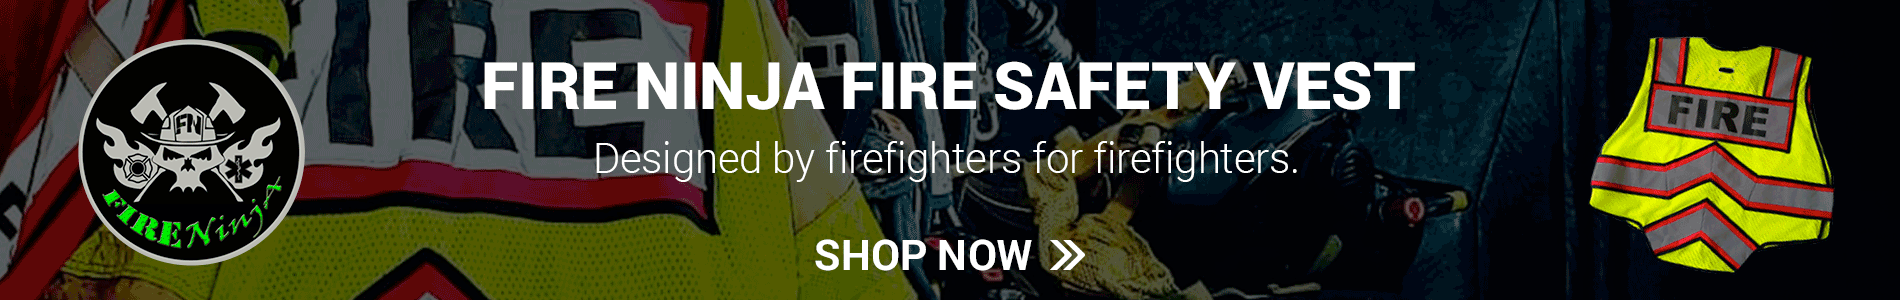 Fire Ninja FireSafety Vest